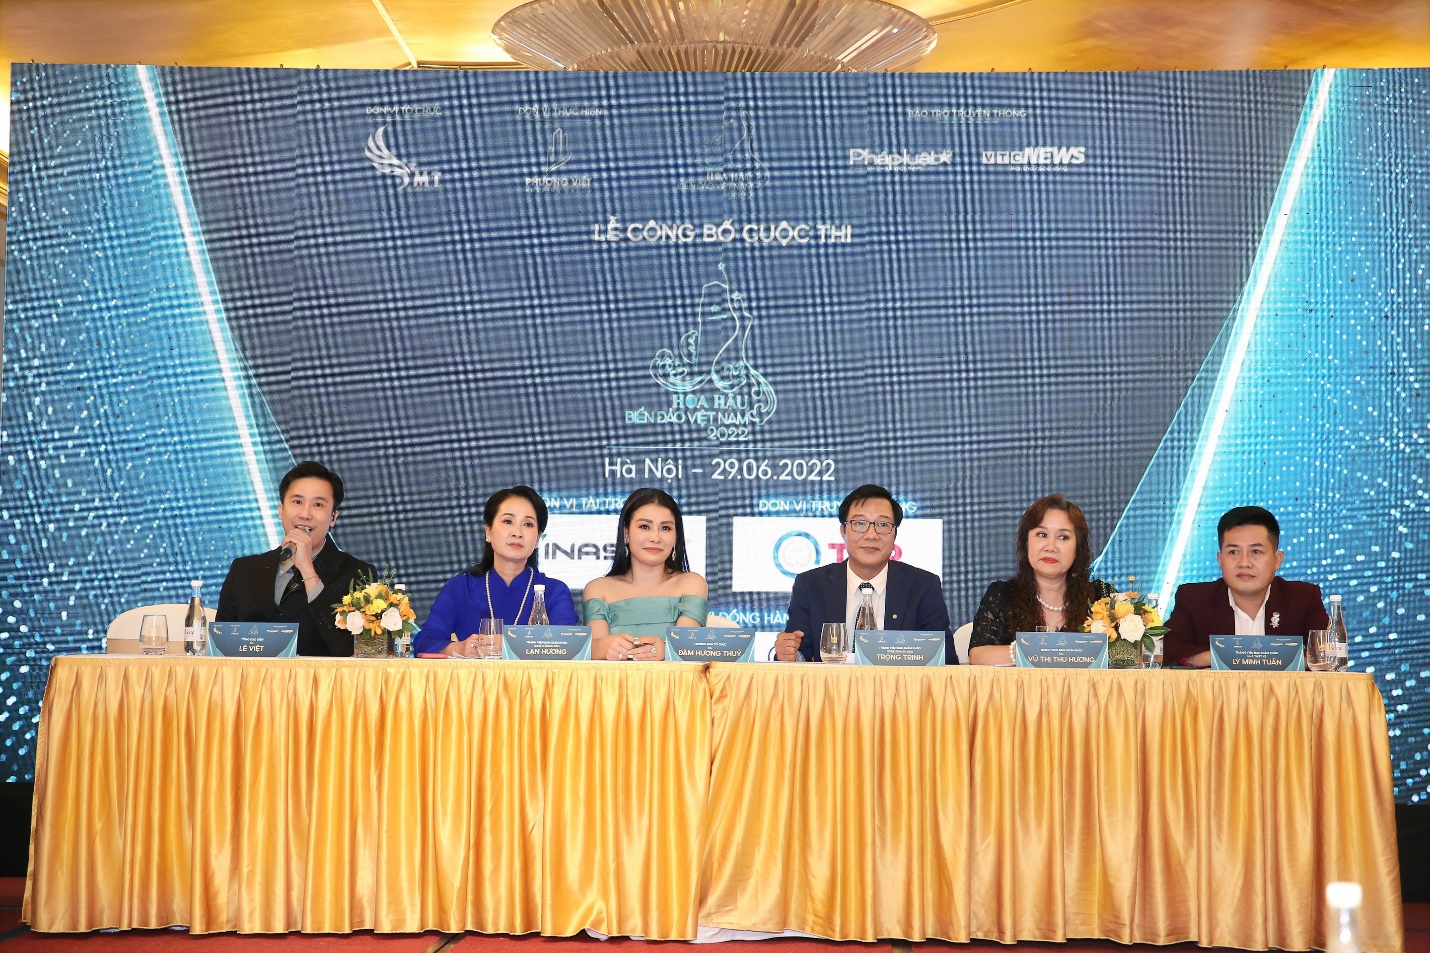 Hoa hậu Biển Đảo Việt Nam 2022: Trưởng ban tổ chức Đàm Hương Thủy và những tâm huyết dành cho chương trình - ảnh 2